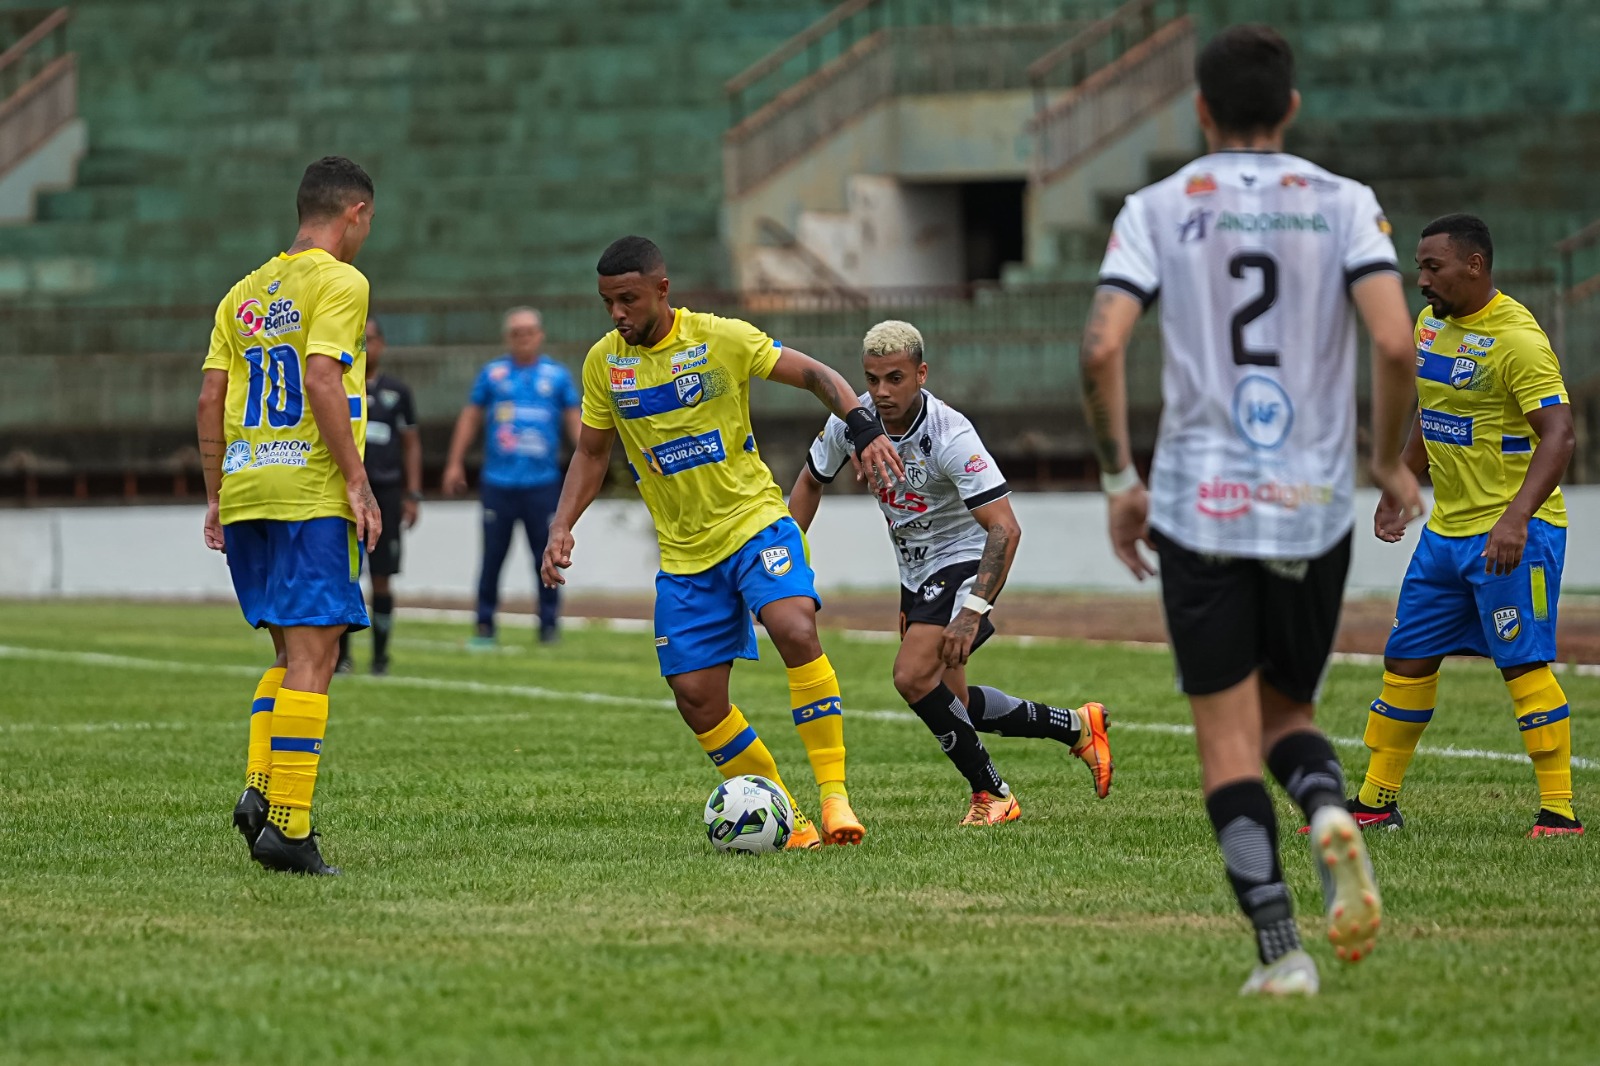 DAC (Camisa amarela) venceu o Corumbaense por 3 a 0 - Foto: Marcelo Berton